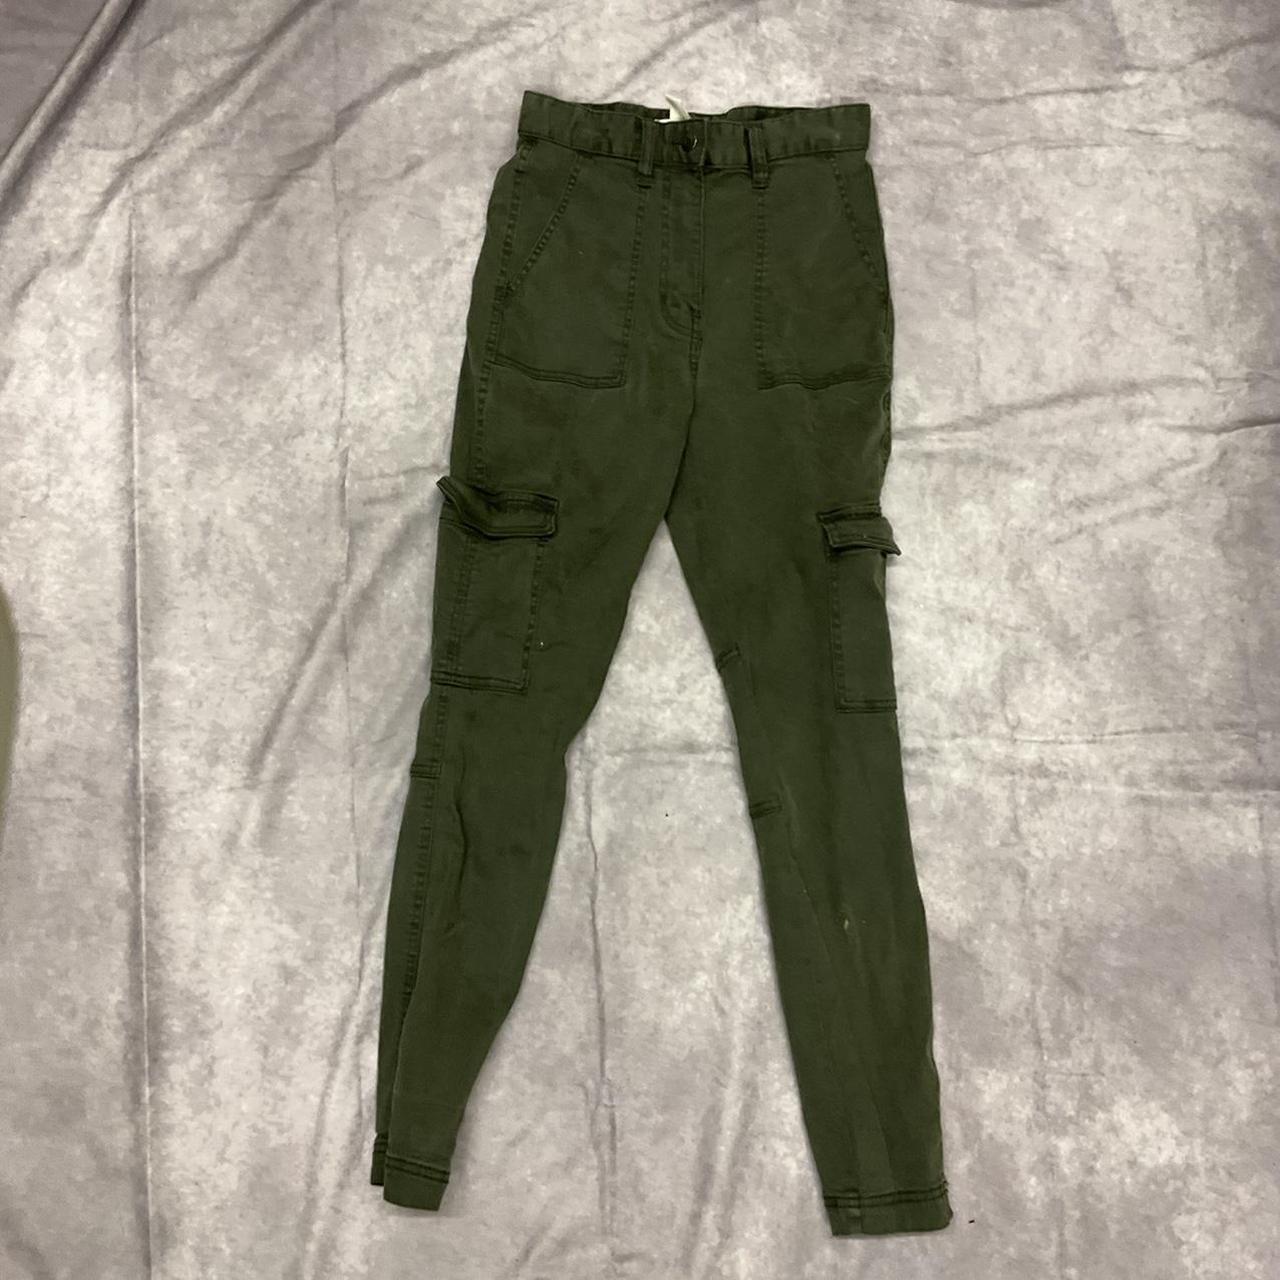 Olive green cargo pants - Depop